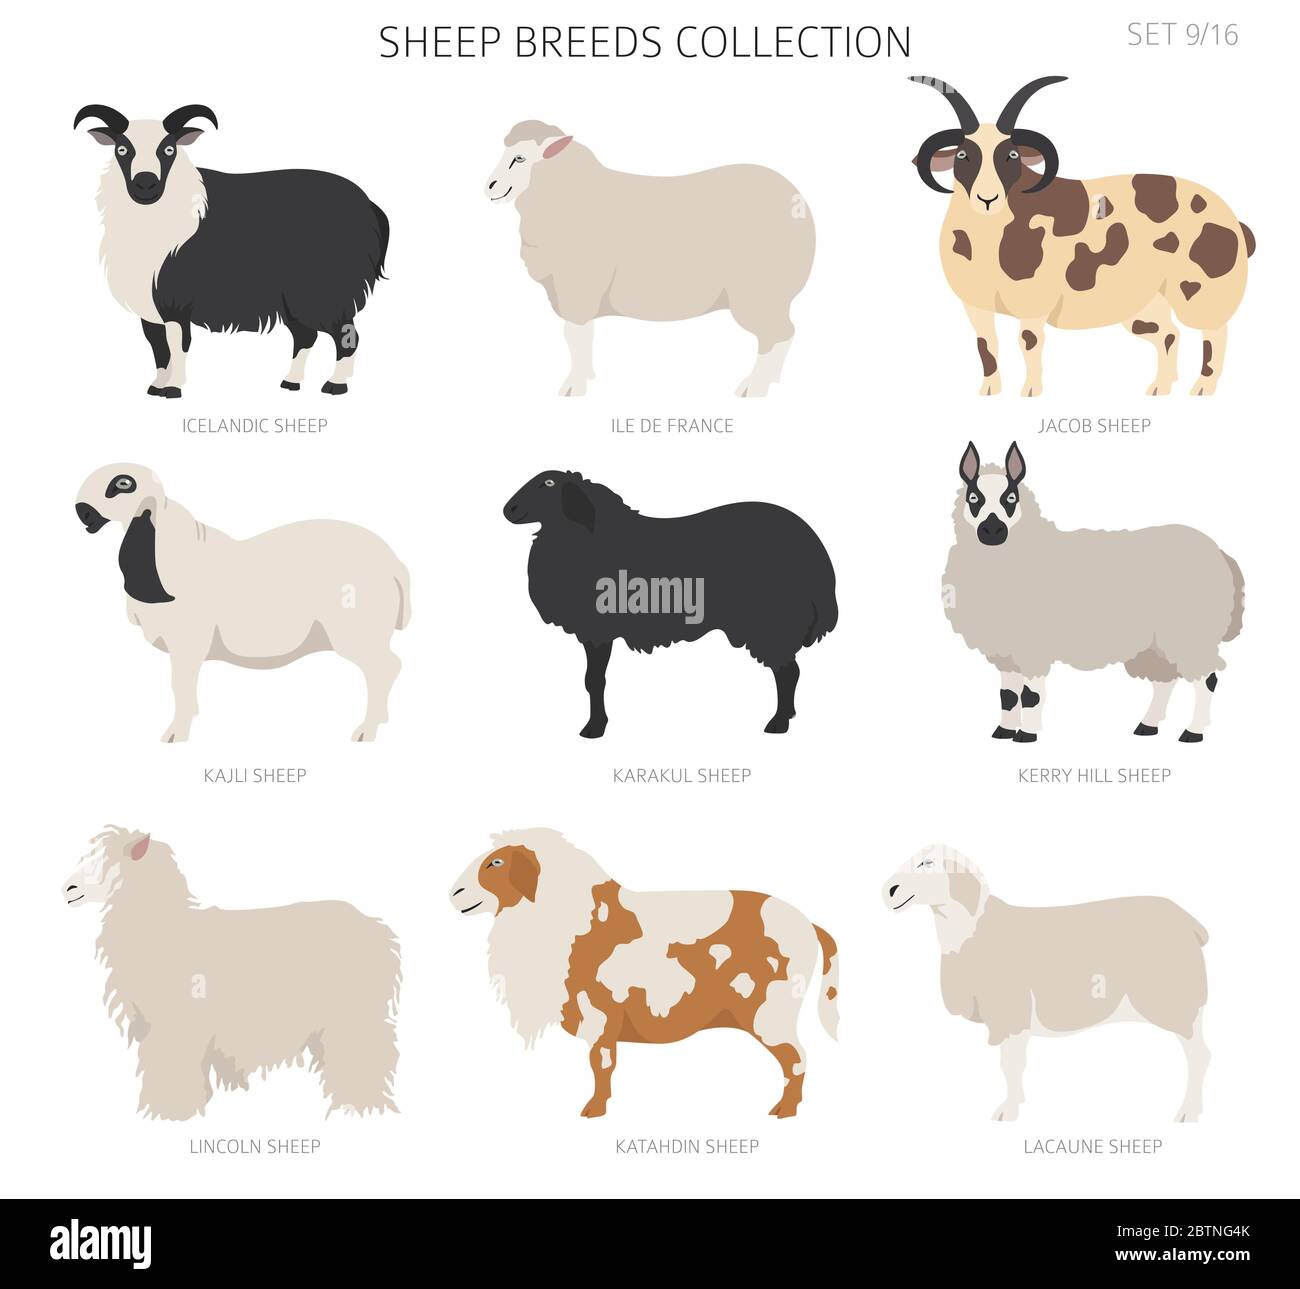 Collection de races de moutons 9. Ensemble animaux de ferme. Conception plate. Illustration vectorielle Illustration de Vecteur